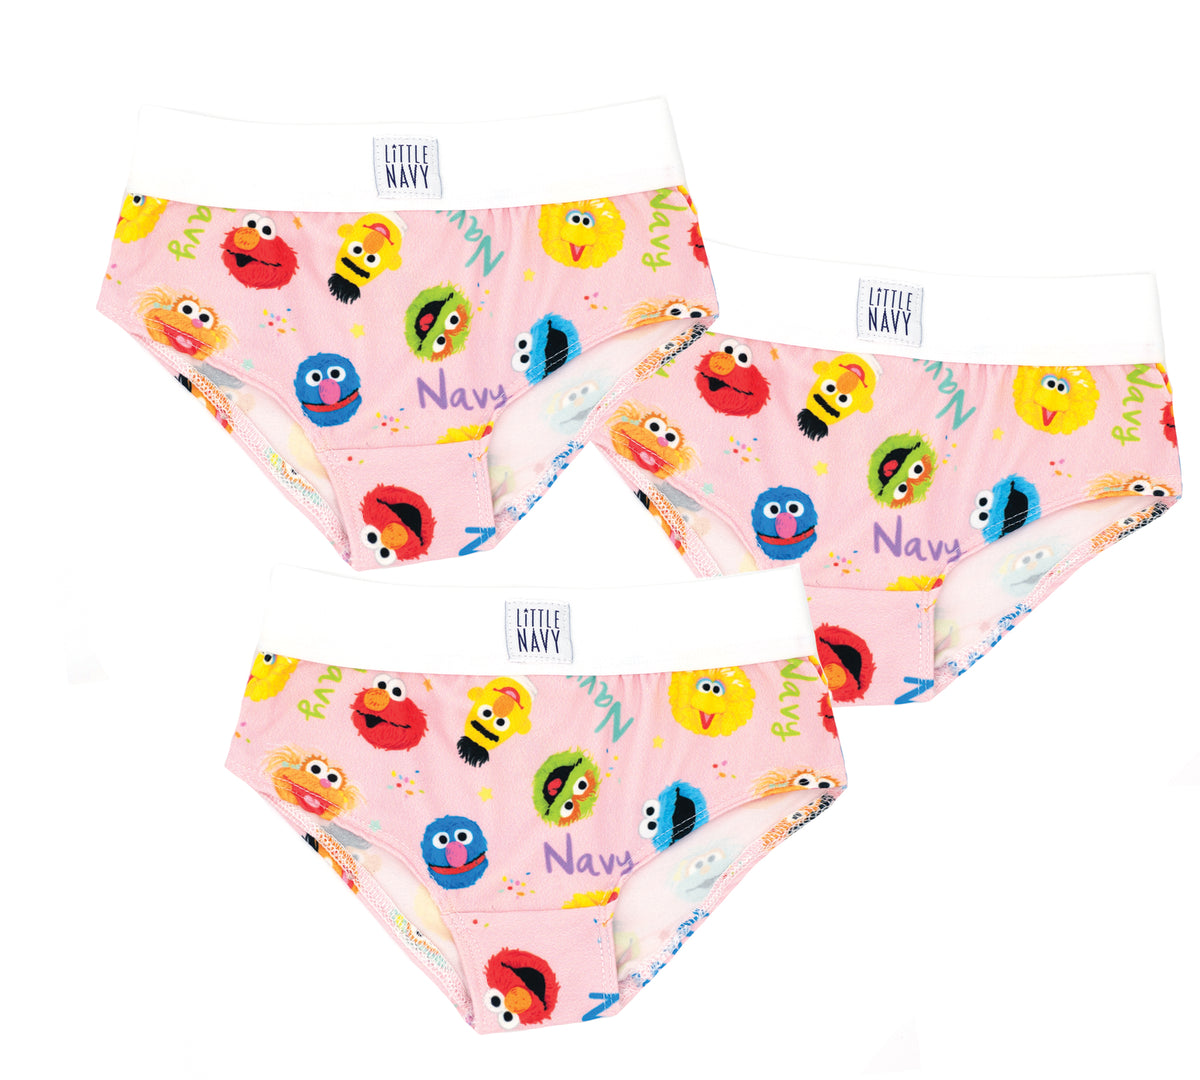 Sesame Street Elmo undies 6pc boys Briefs new jocks cotton underwear age 4-5